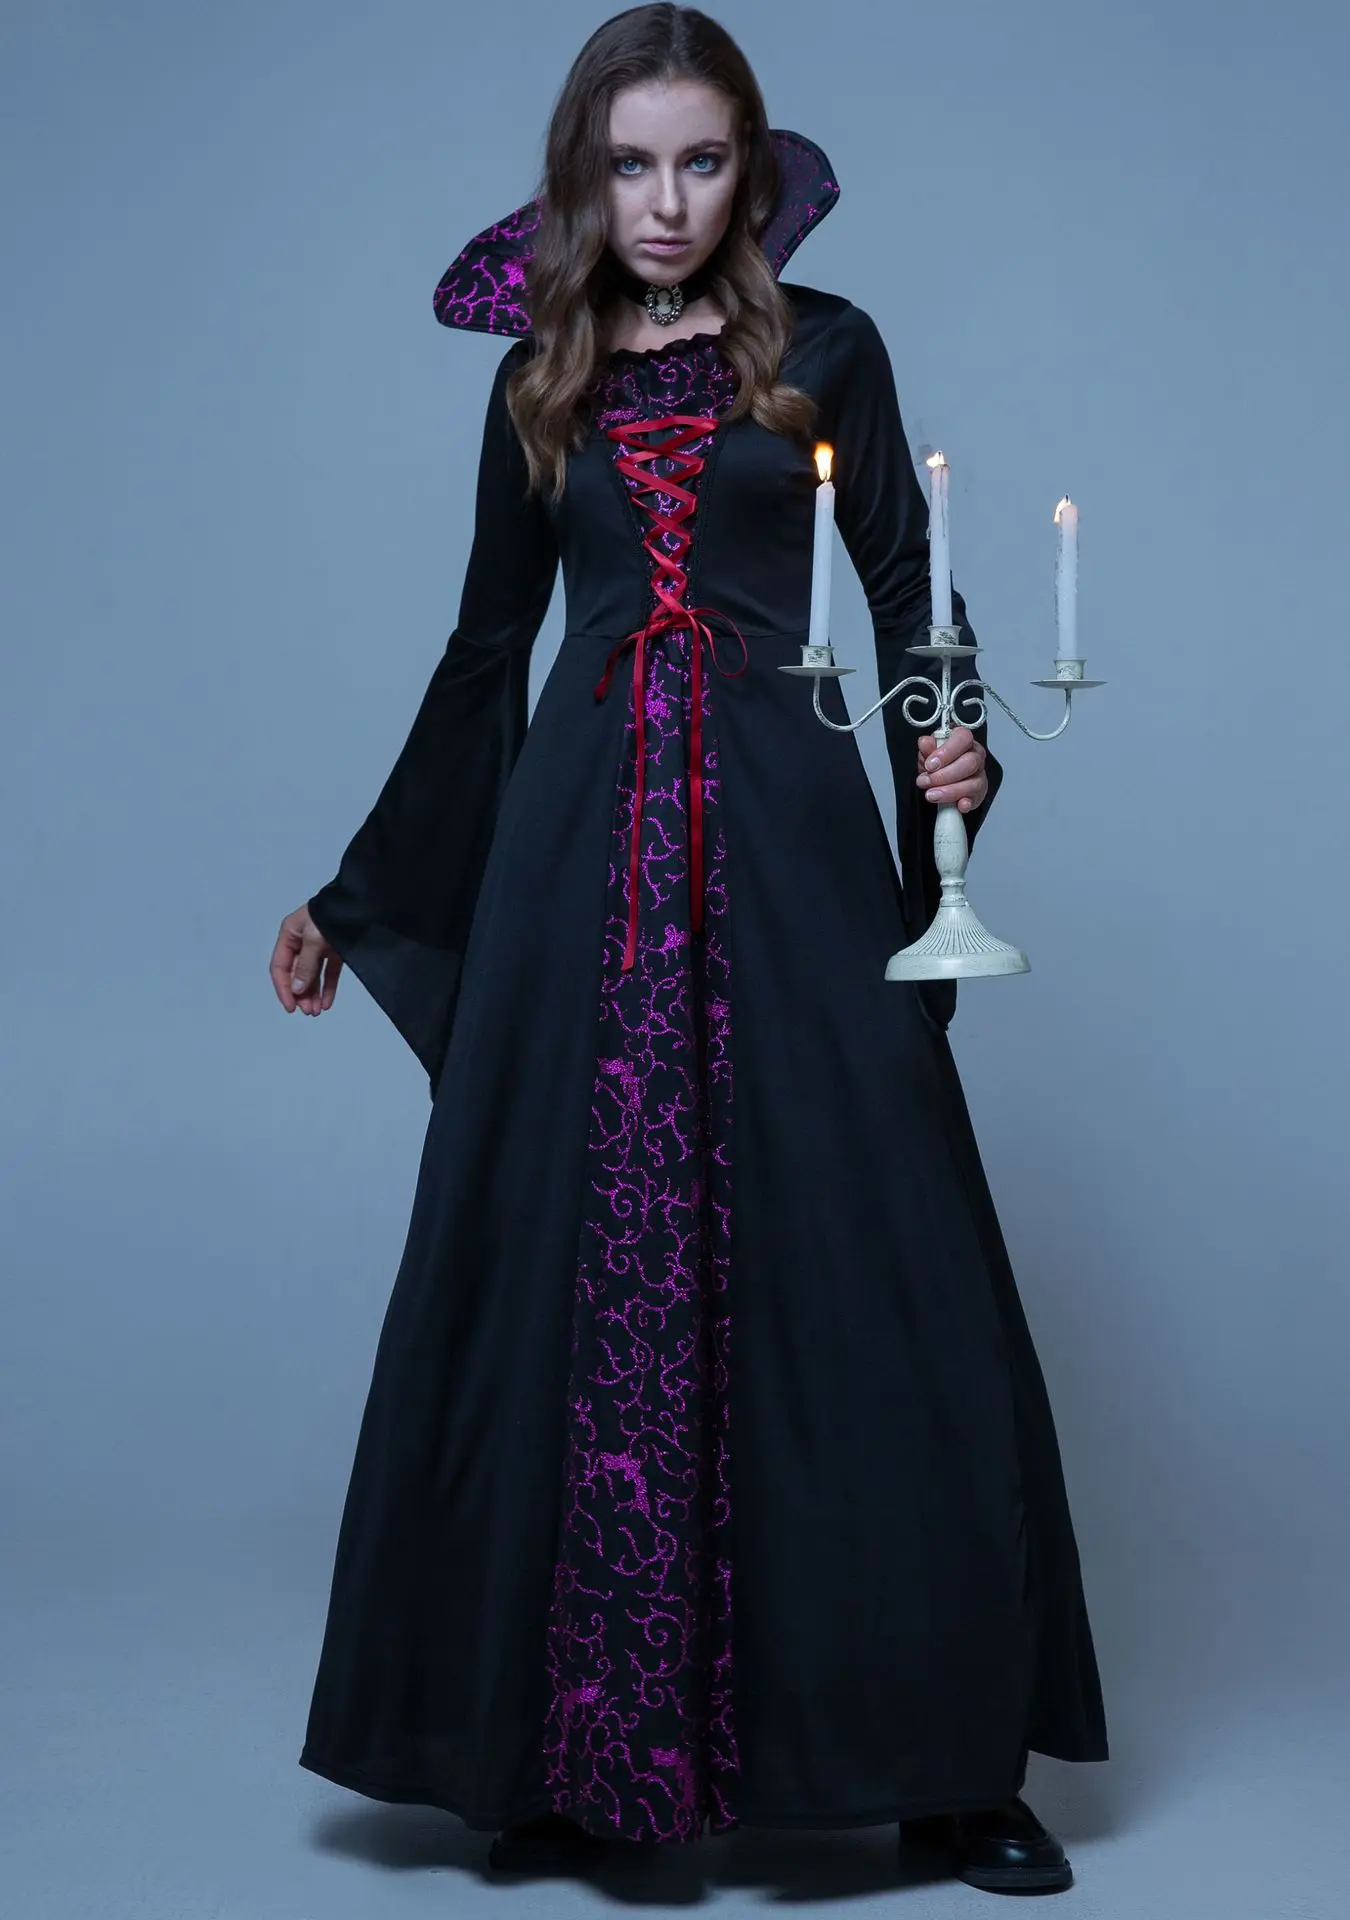 Robe gótico retrô vampiro fantasia, robe halloween, corte medieval, rainha vestido